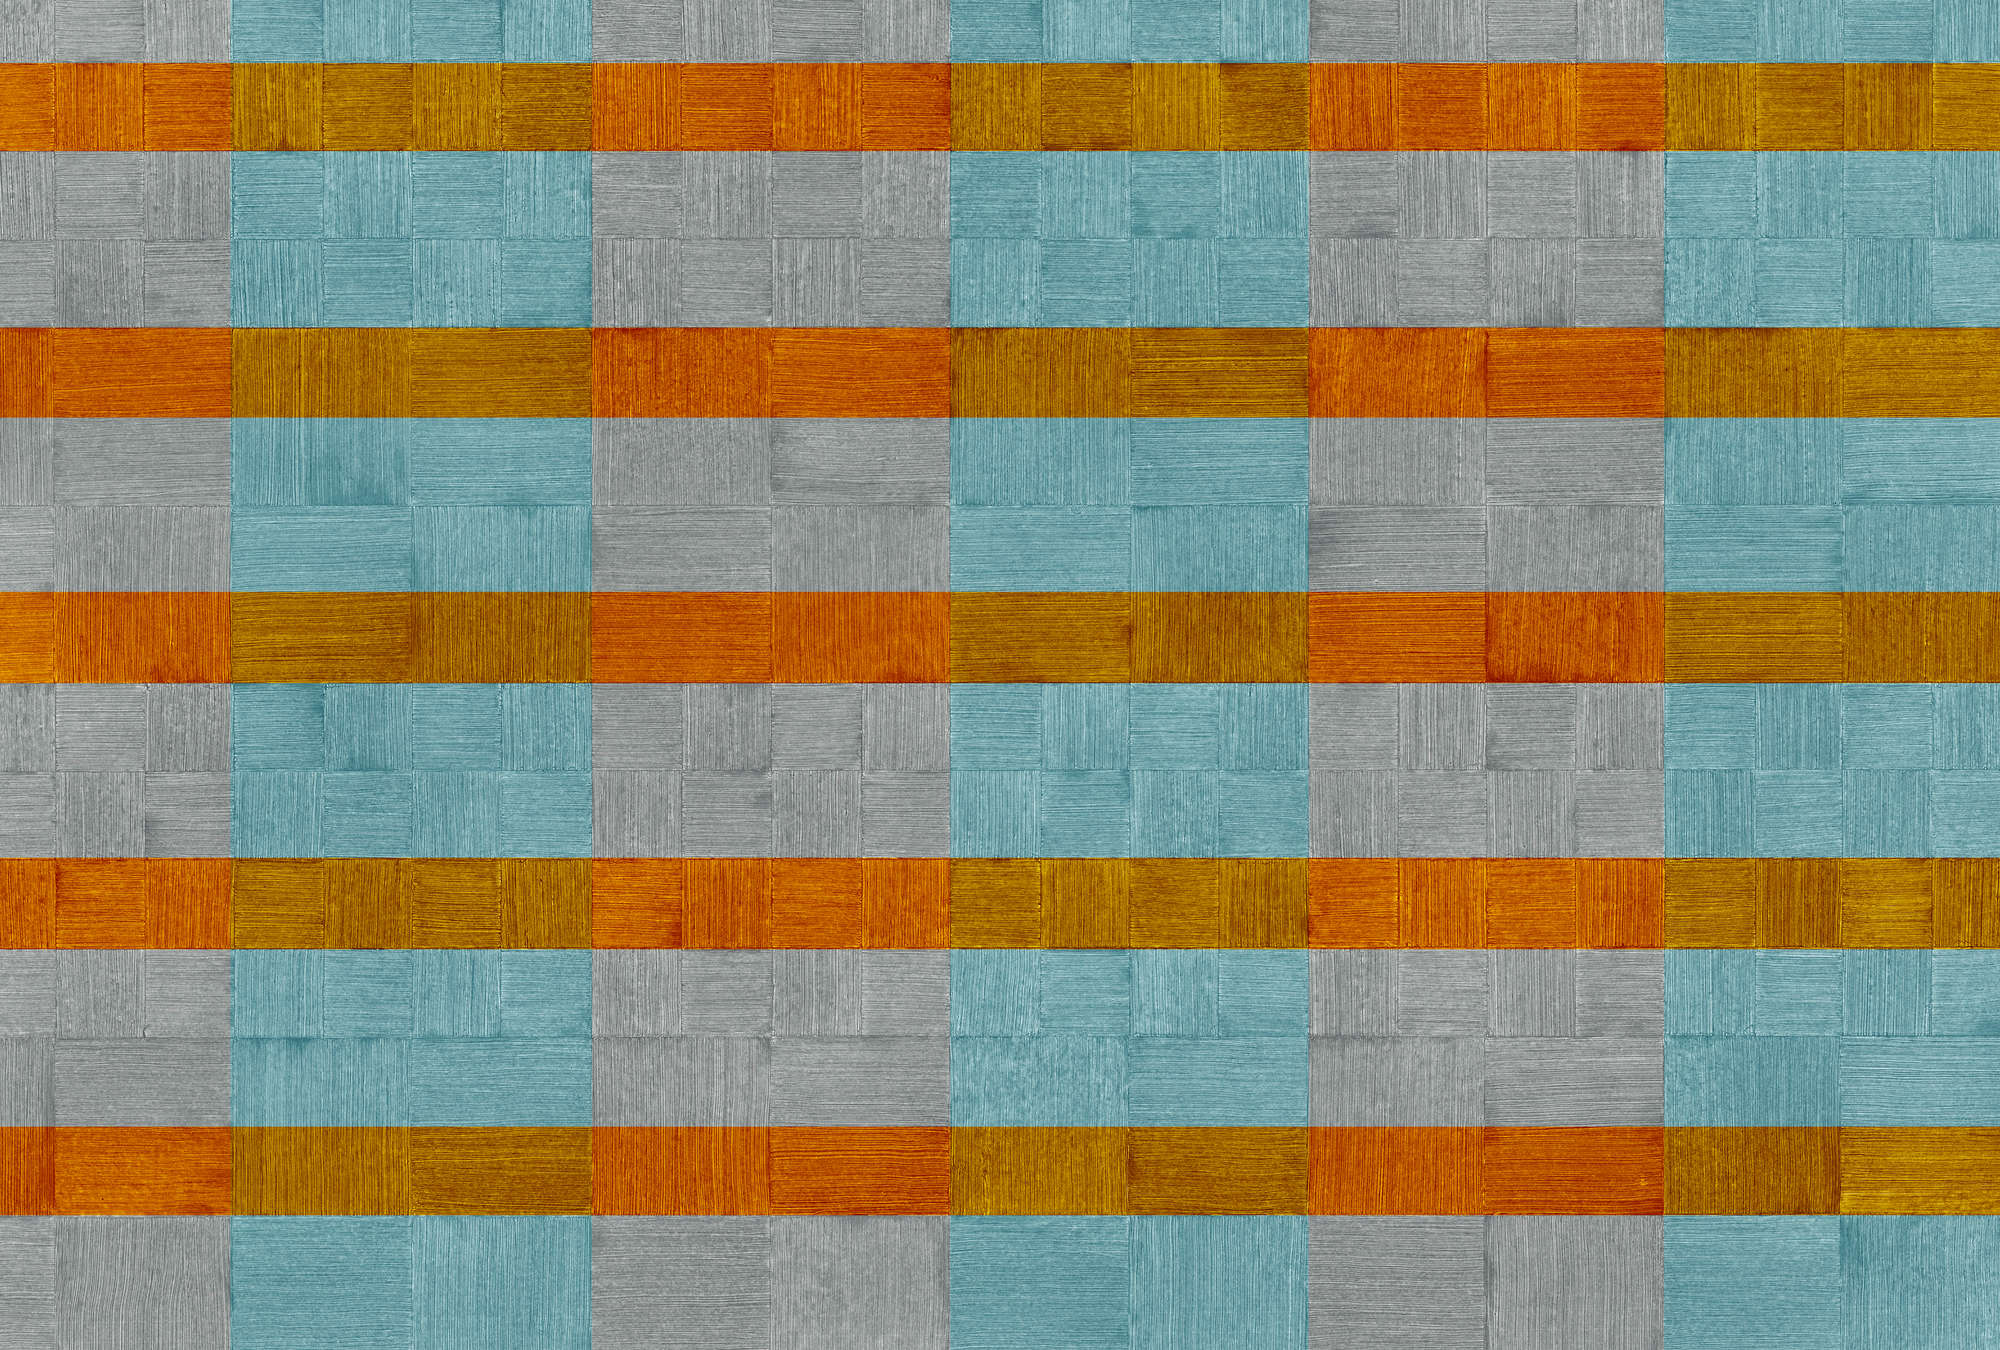             Mural de rayas, con textura, a cuadros - azul, gris, naranja
        